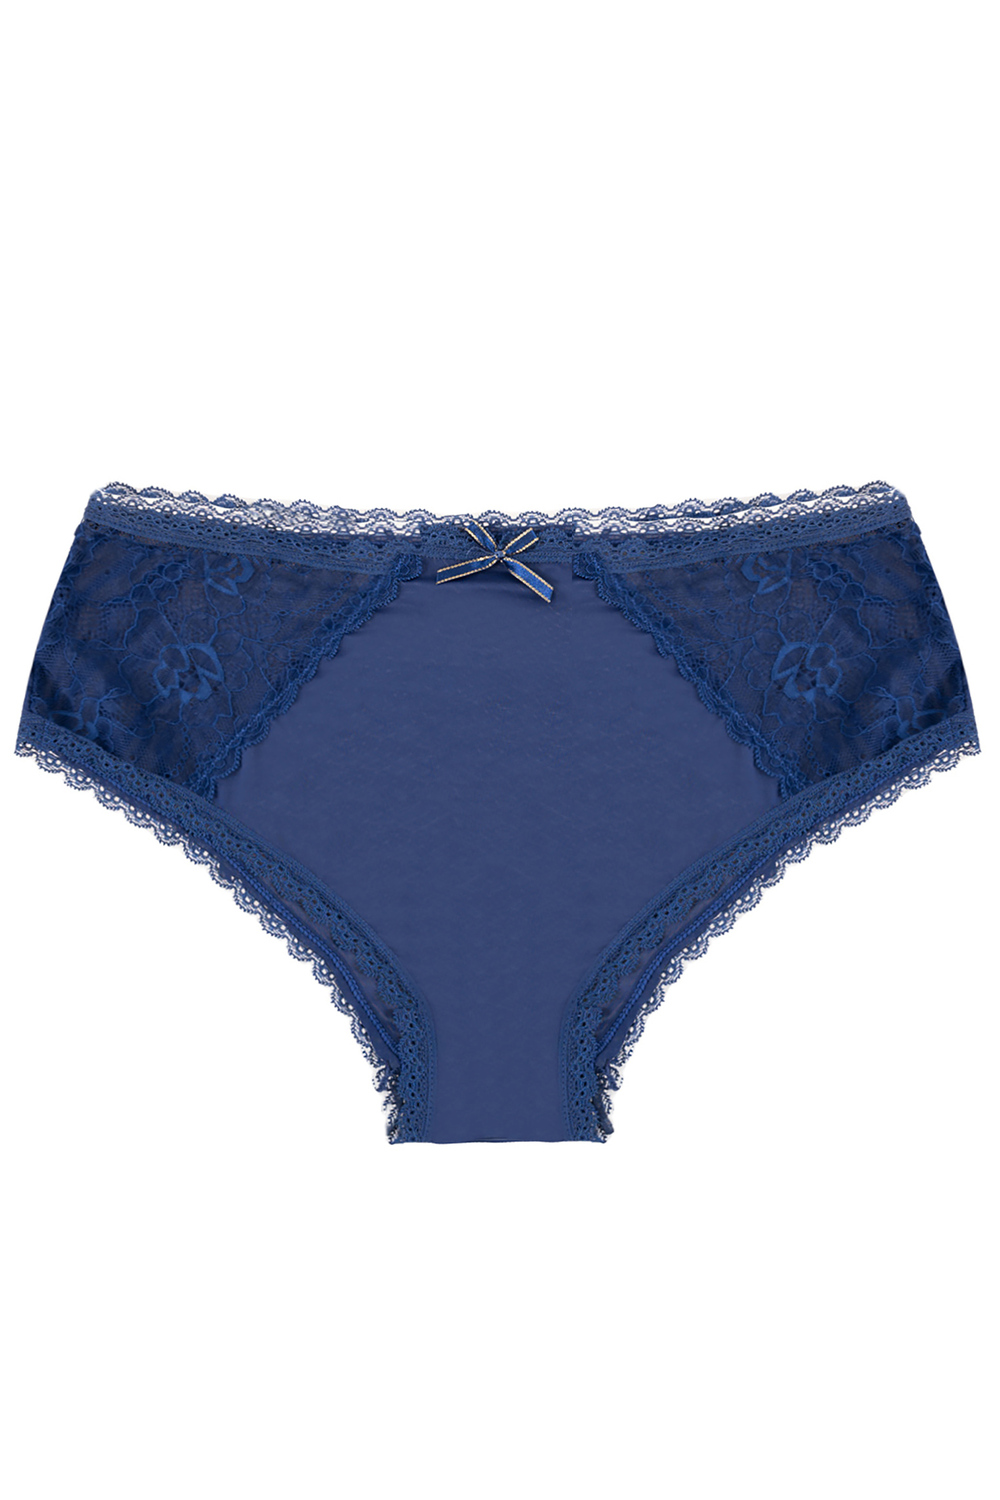 Buy Nivcy X-Large Women Bra Panty Set Ocean Blue Online at Best